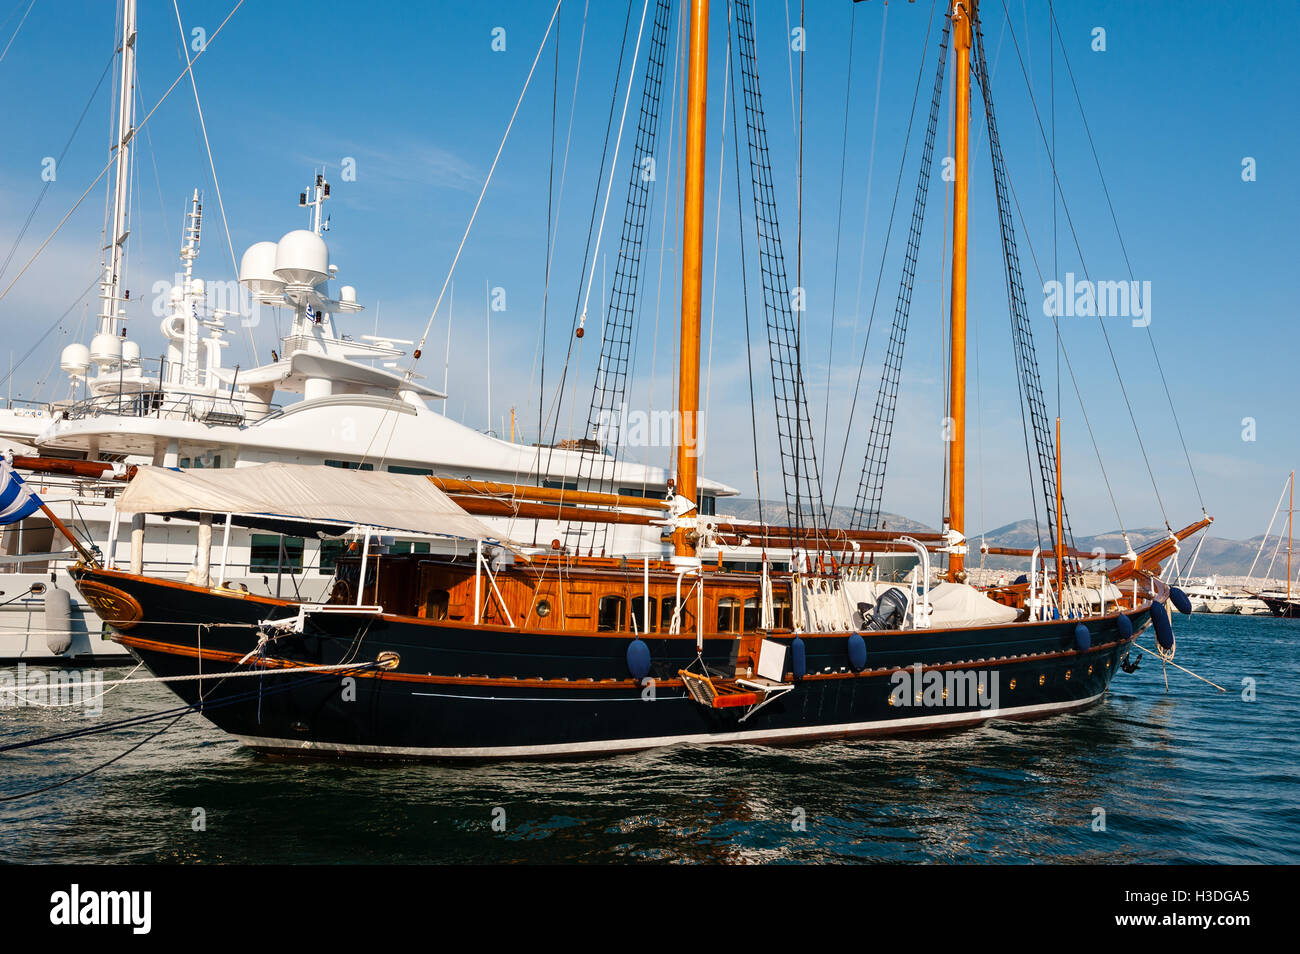 El Pireo, Grecia. Los barcos de la Marina. Foto de stock